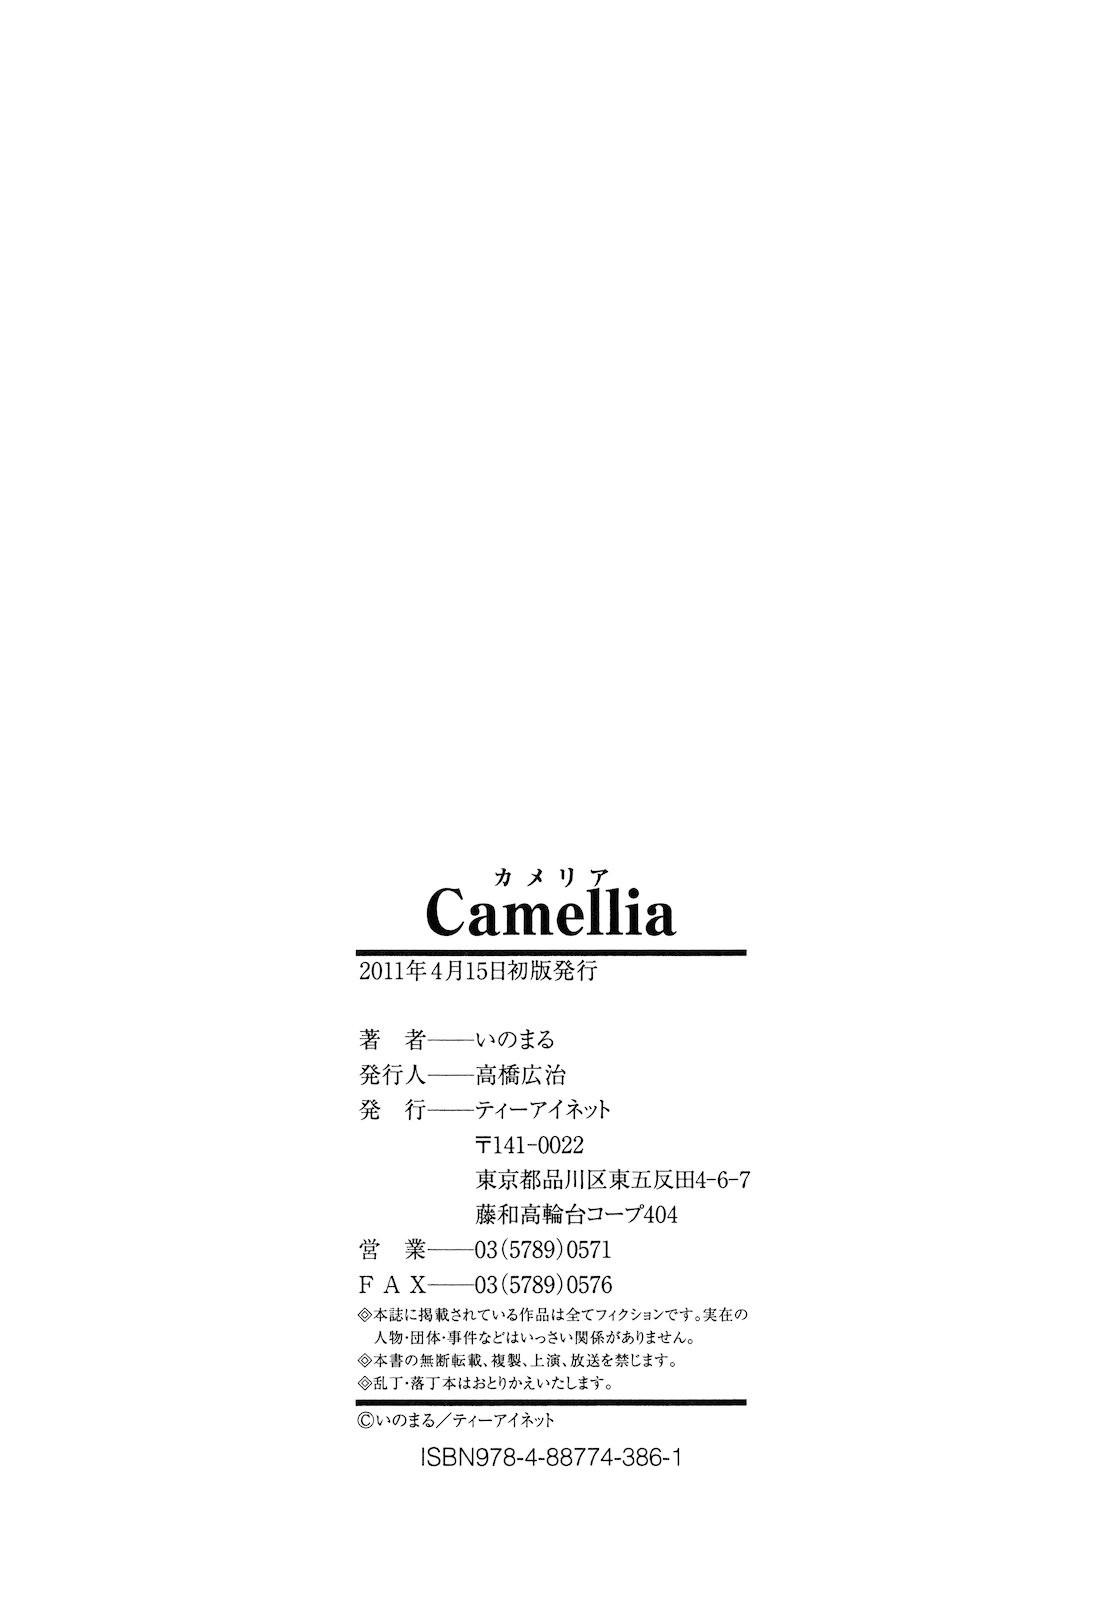 Camellia 223